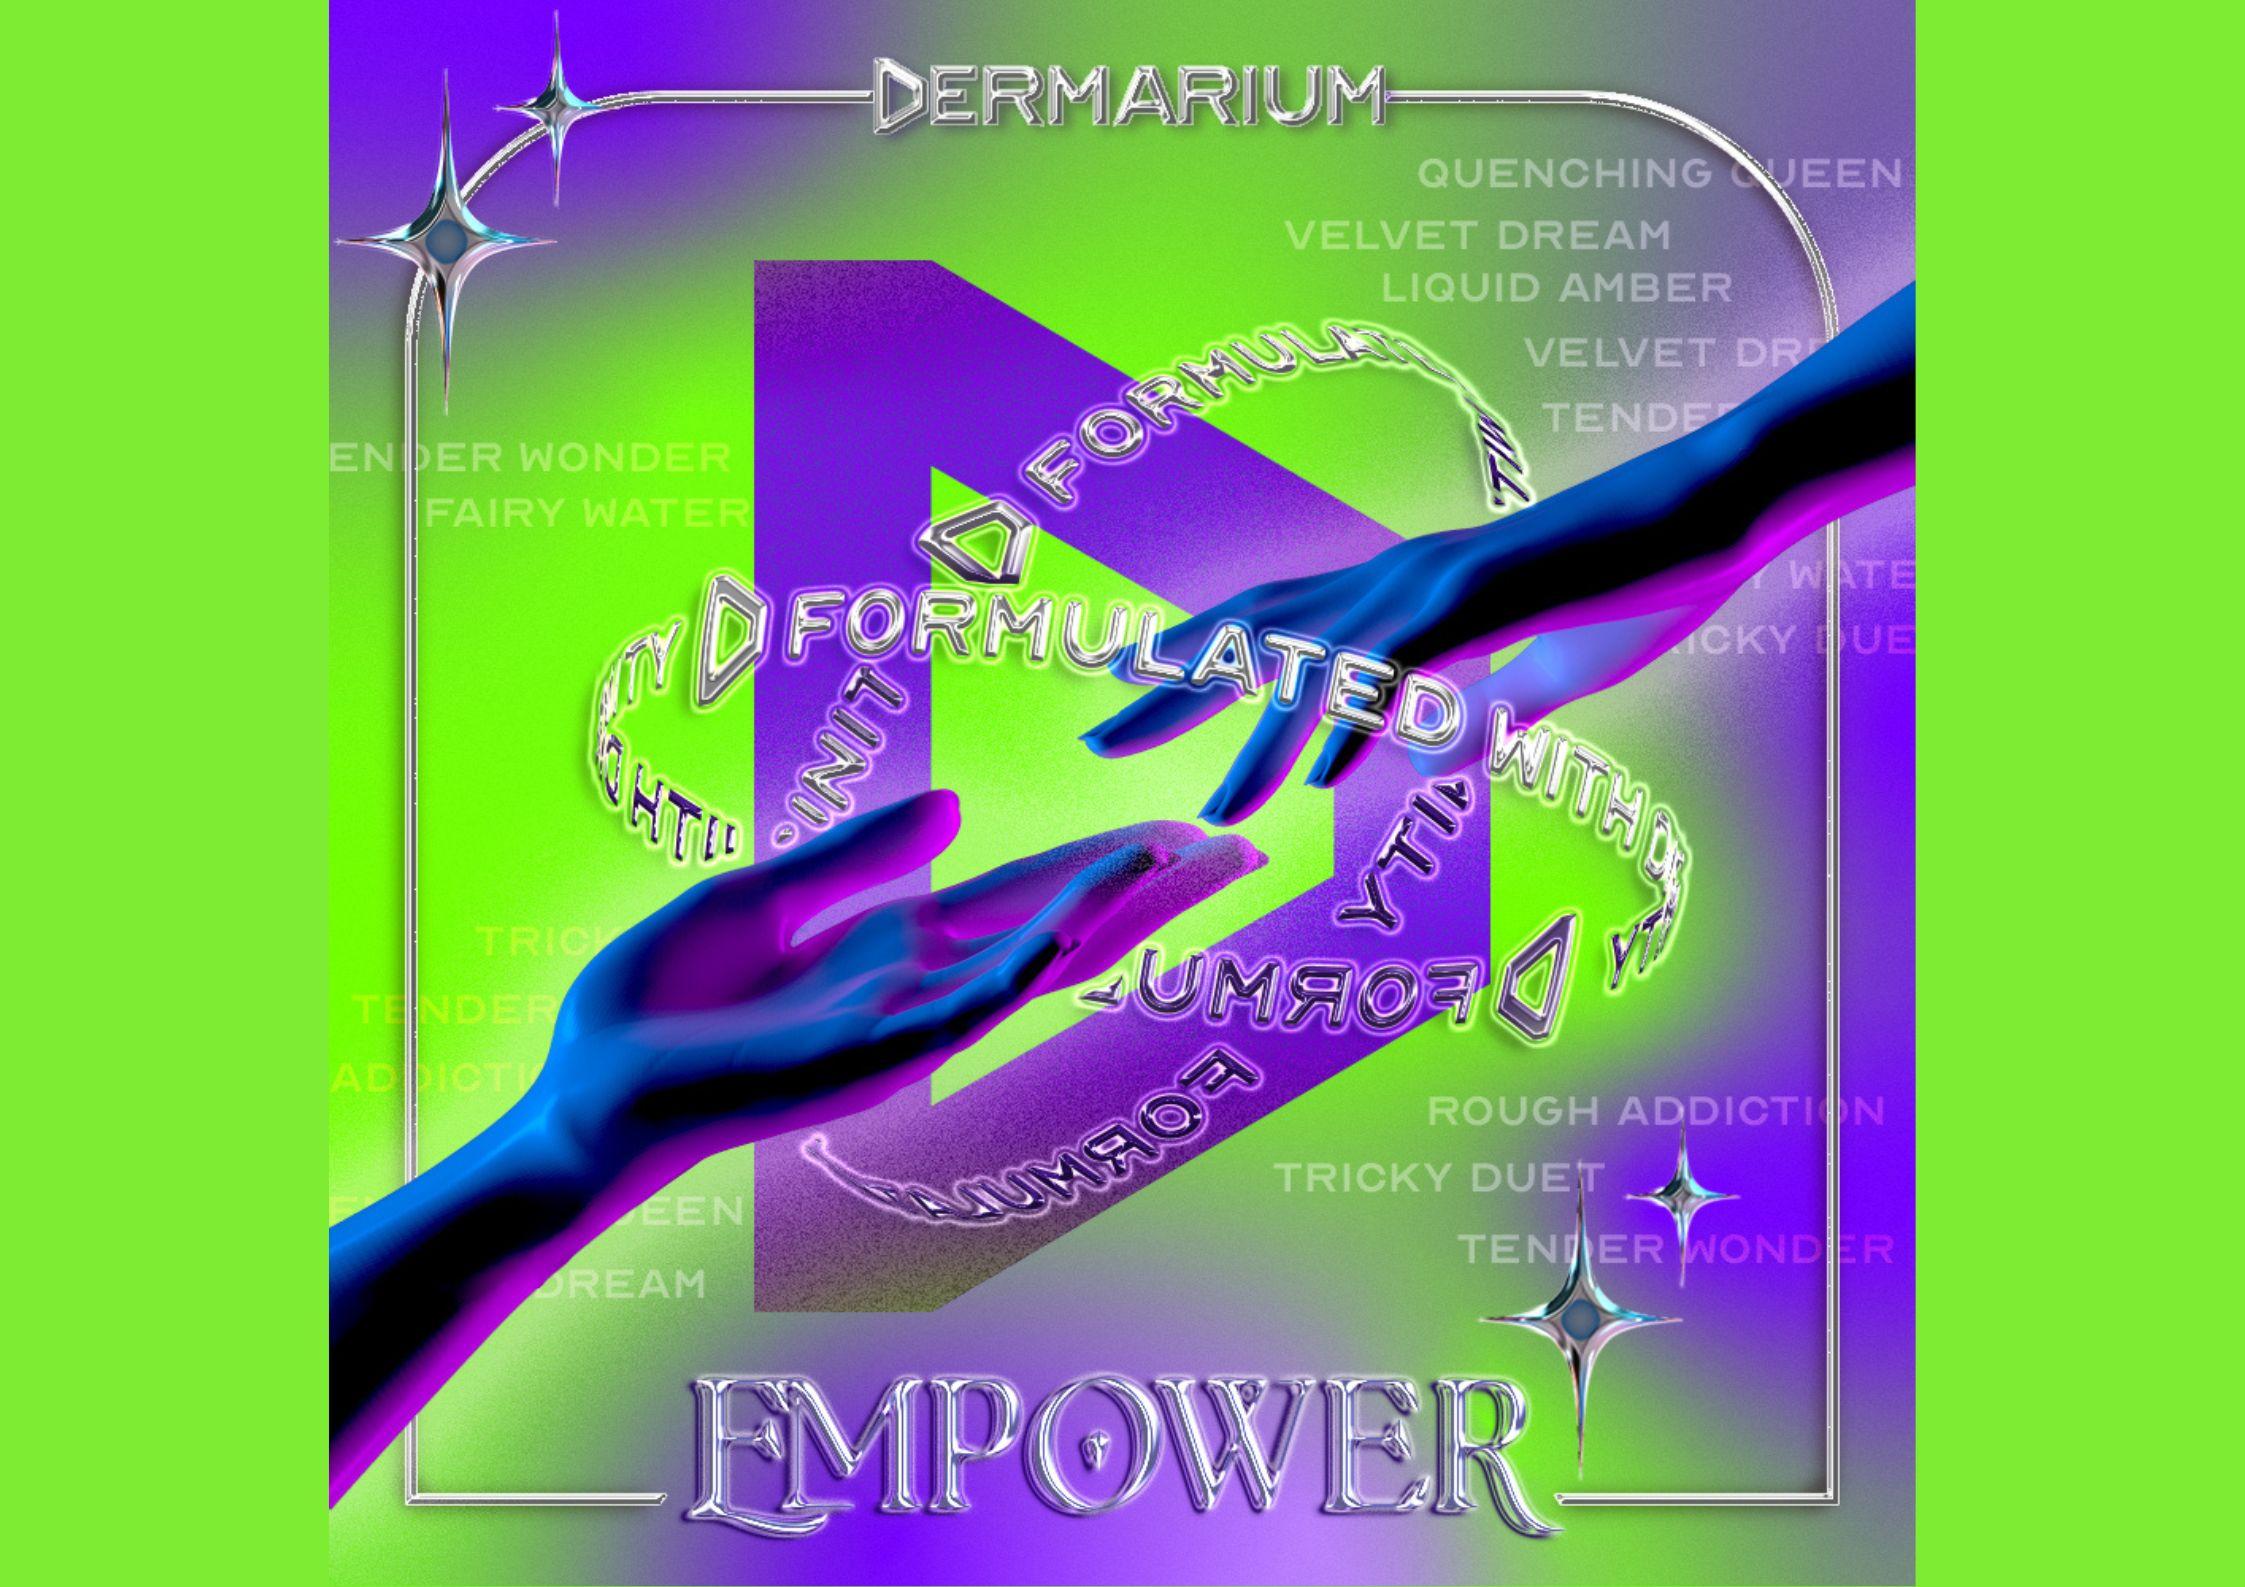 Dermarium là thương hiệu khá trẻ hiện trên thị trường hiện nay (Ảnh: Internet).